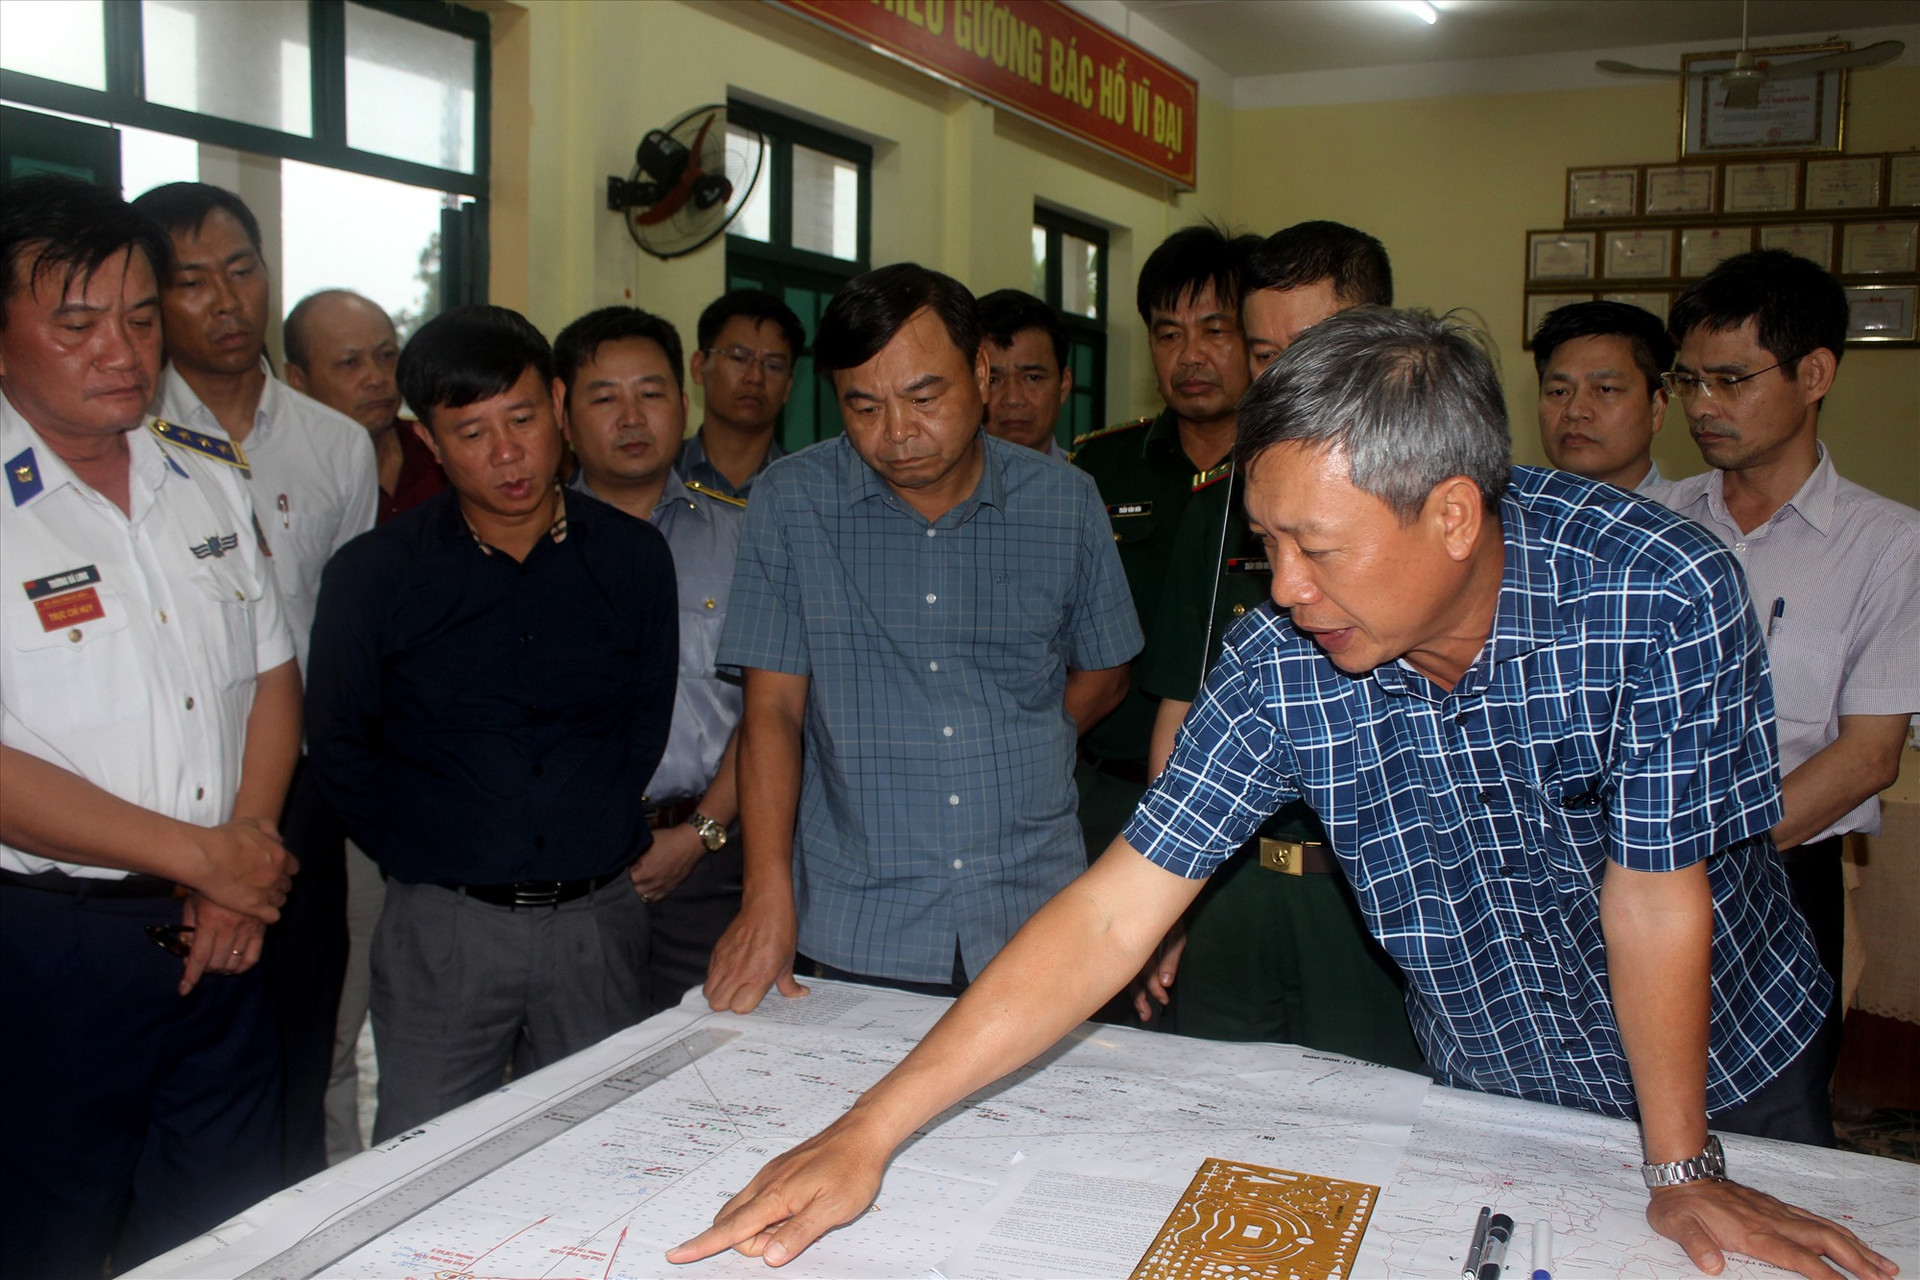 Phó Chủ tịch UBND tỉnh Hồ Quang Bửu báo cáo với Thứ trưởng Nguyễn Hoàng Hiệp (áo ngắn tay, đứng giữa) công tác ứng cứu, vào chiều 17/10. Ảnh: TC